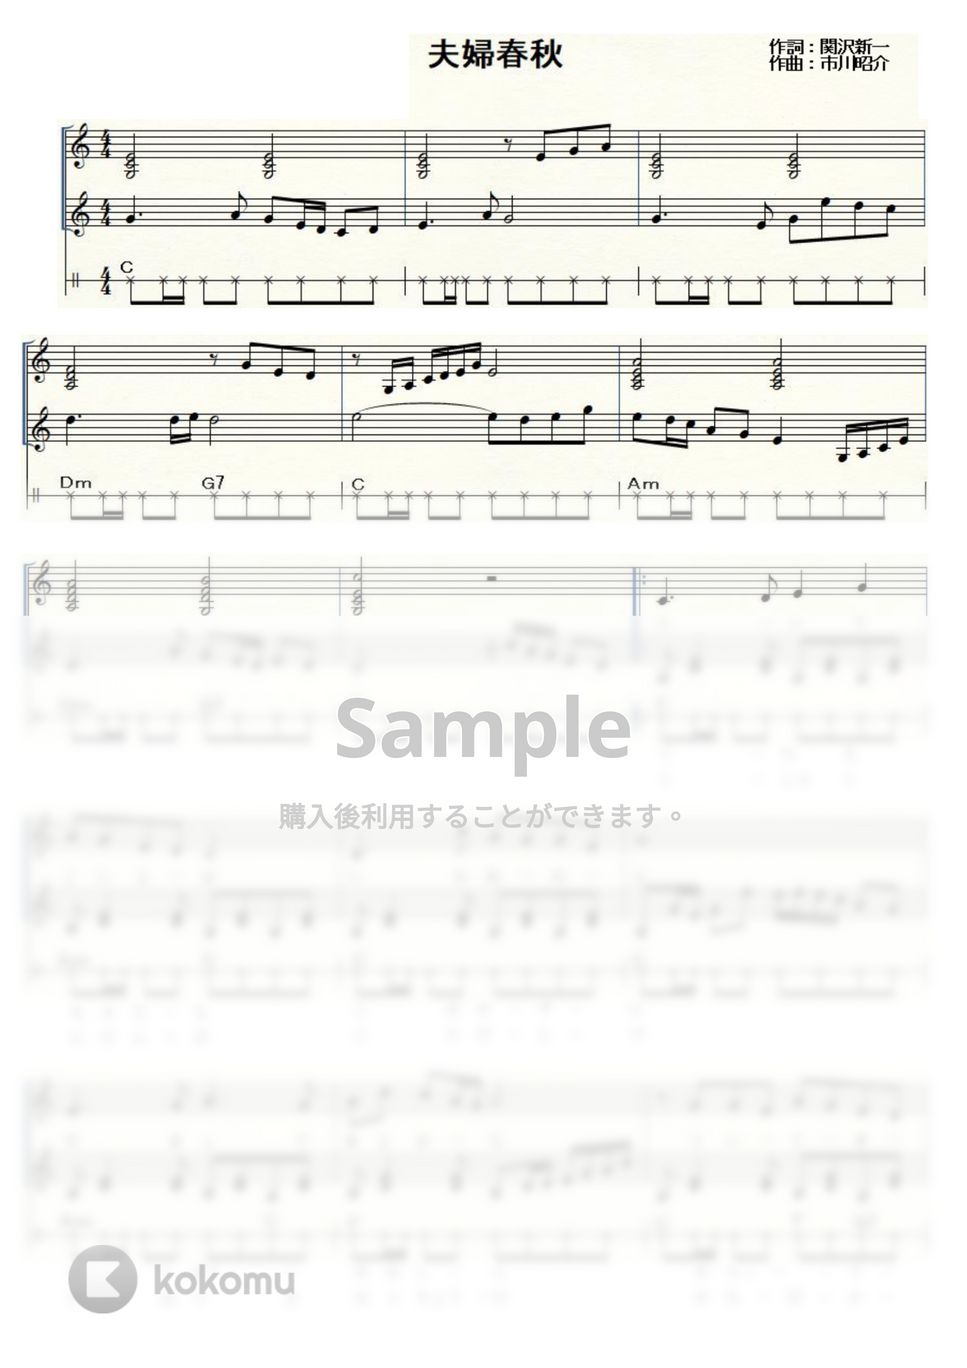 村田英雄 - 夫婦春秋 (ウクレレ三重奏 / Low-G / 初級) by ukulelepapa